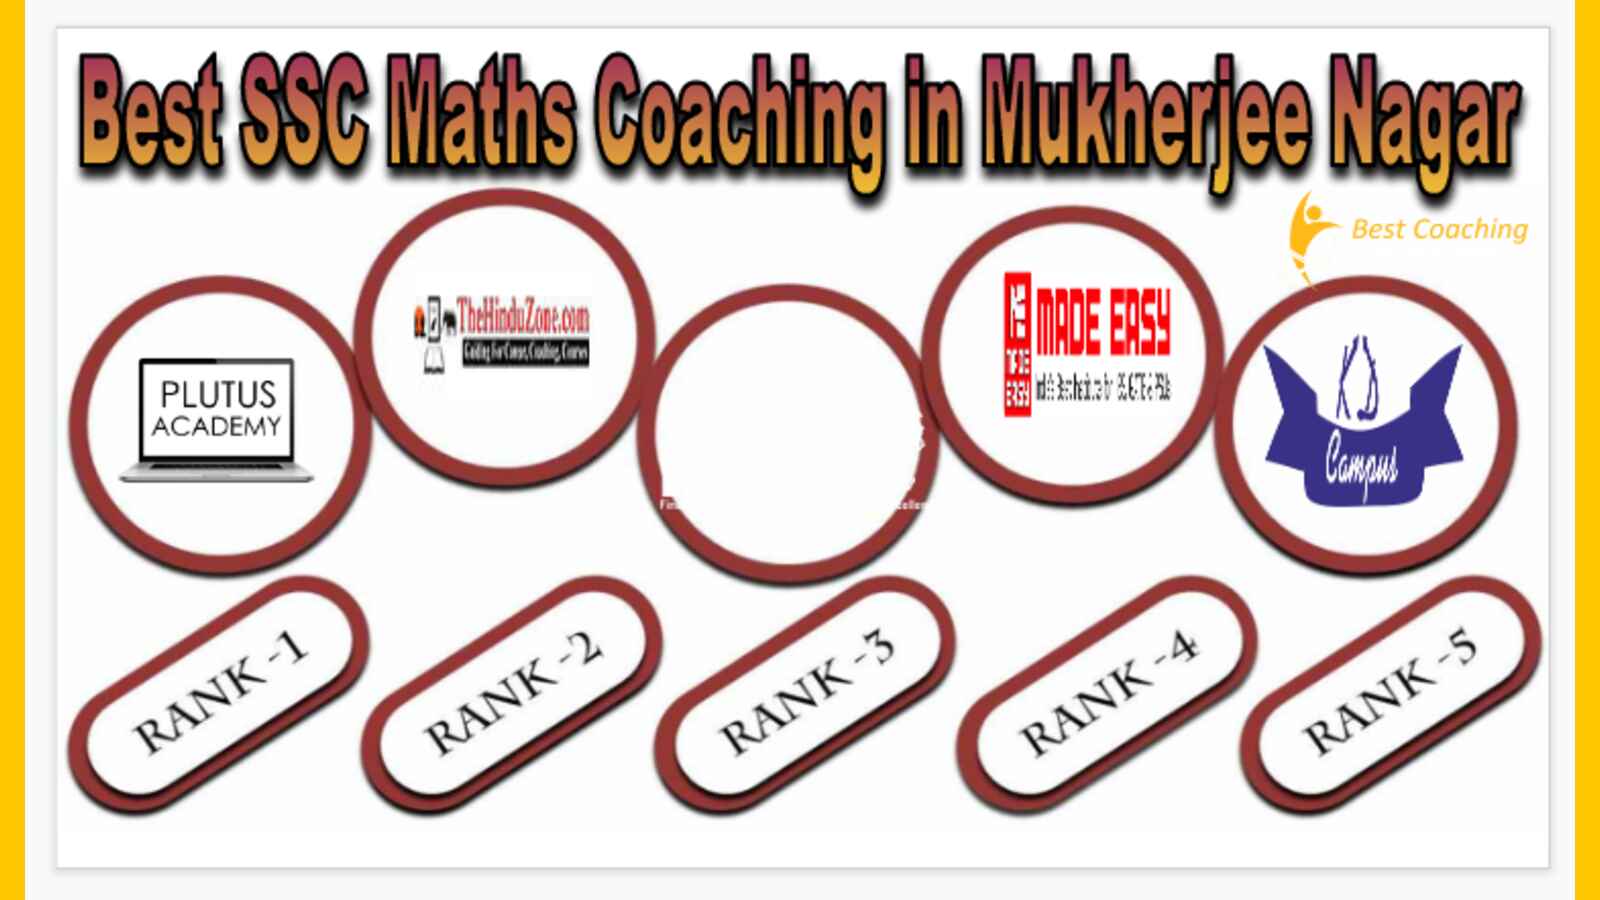 Best SSC Maths Coaching in Mukherjee Nagar